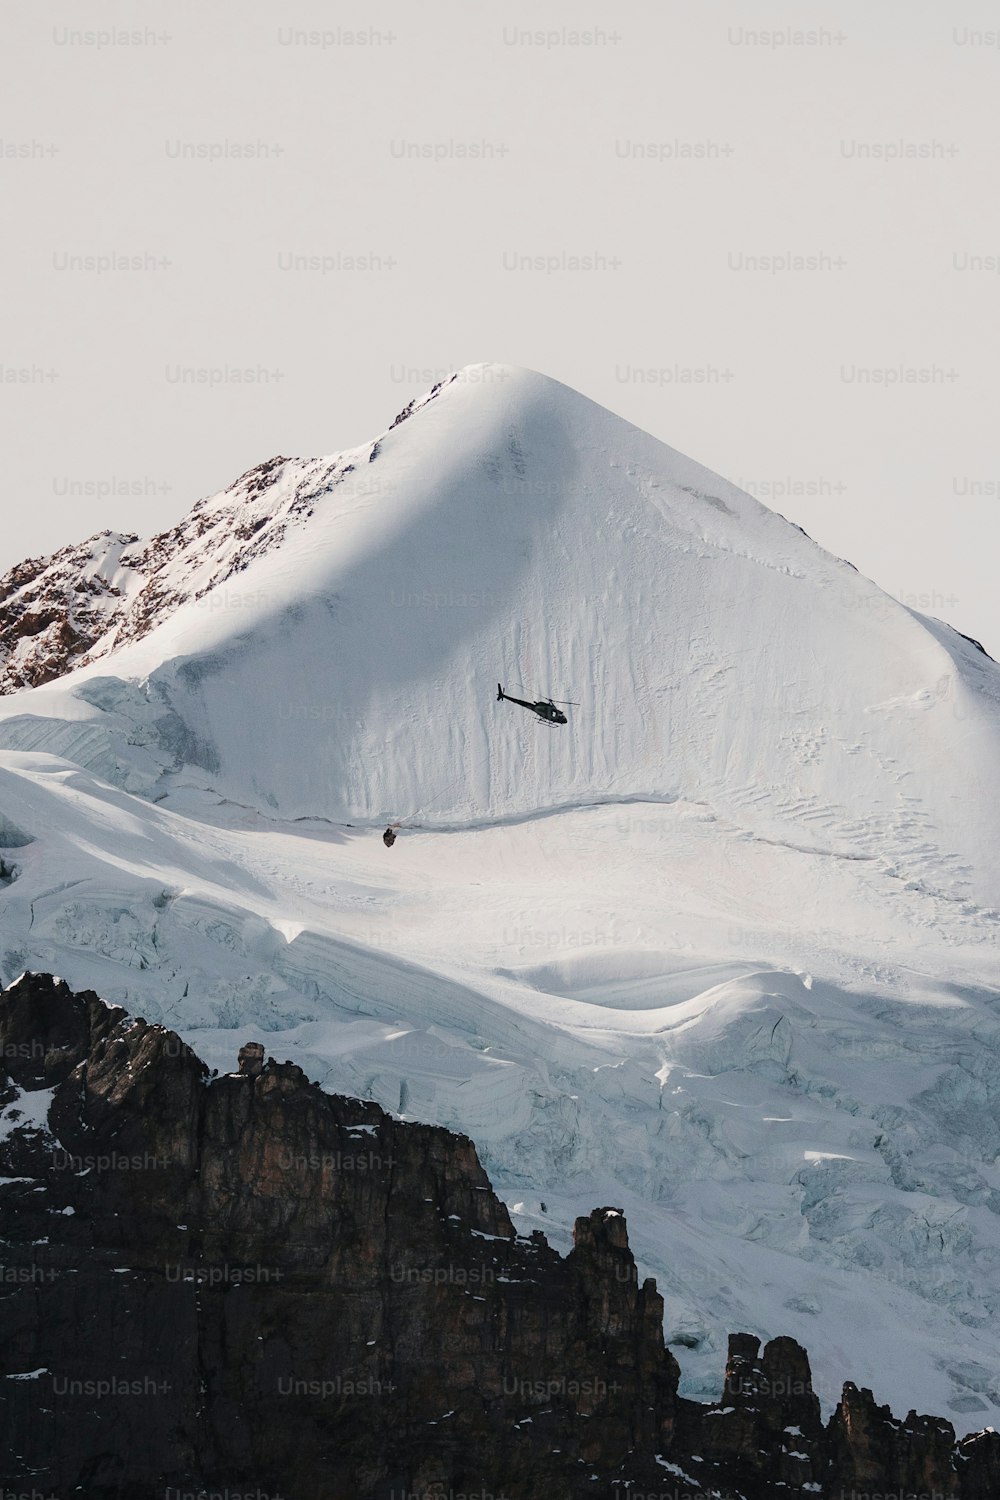 Un snowboarder está saltando de una montaña nevada